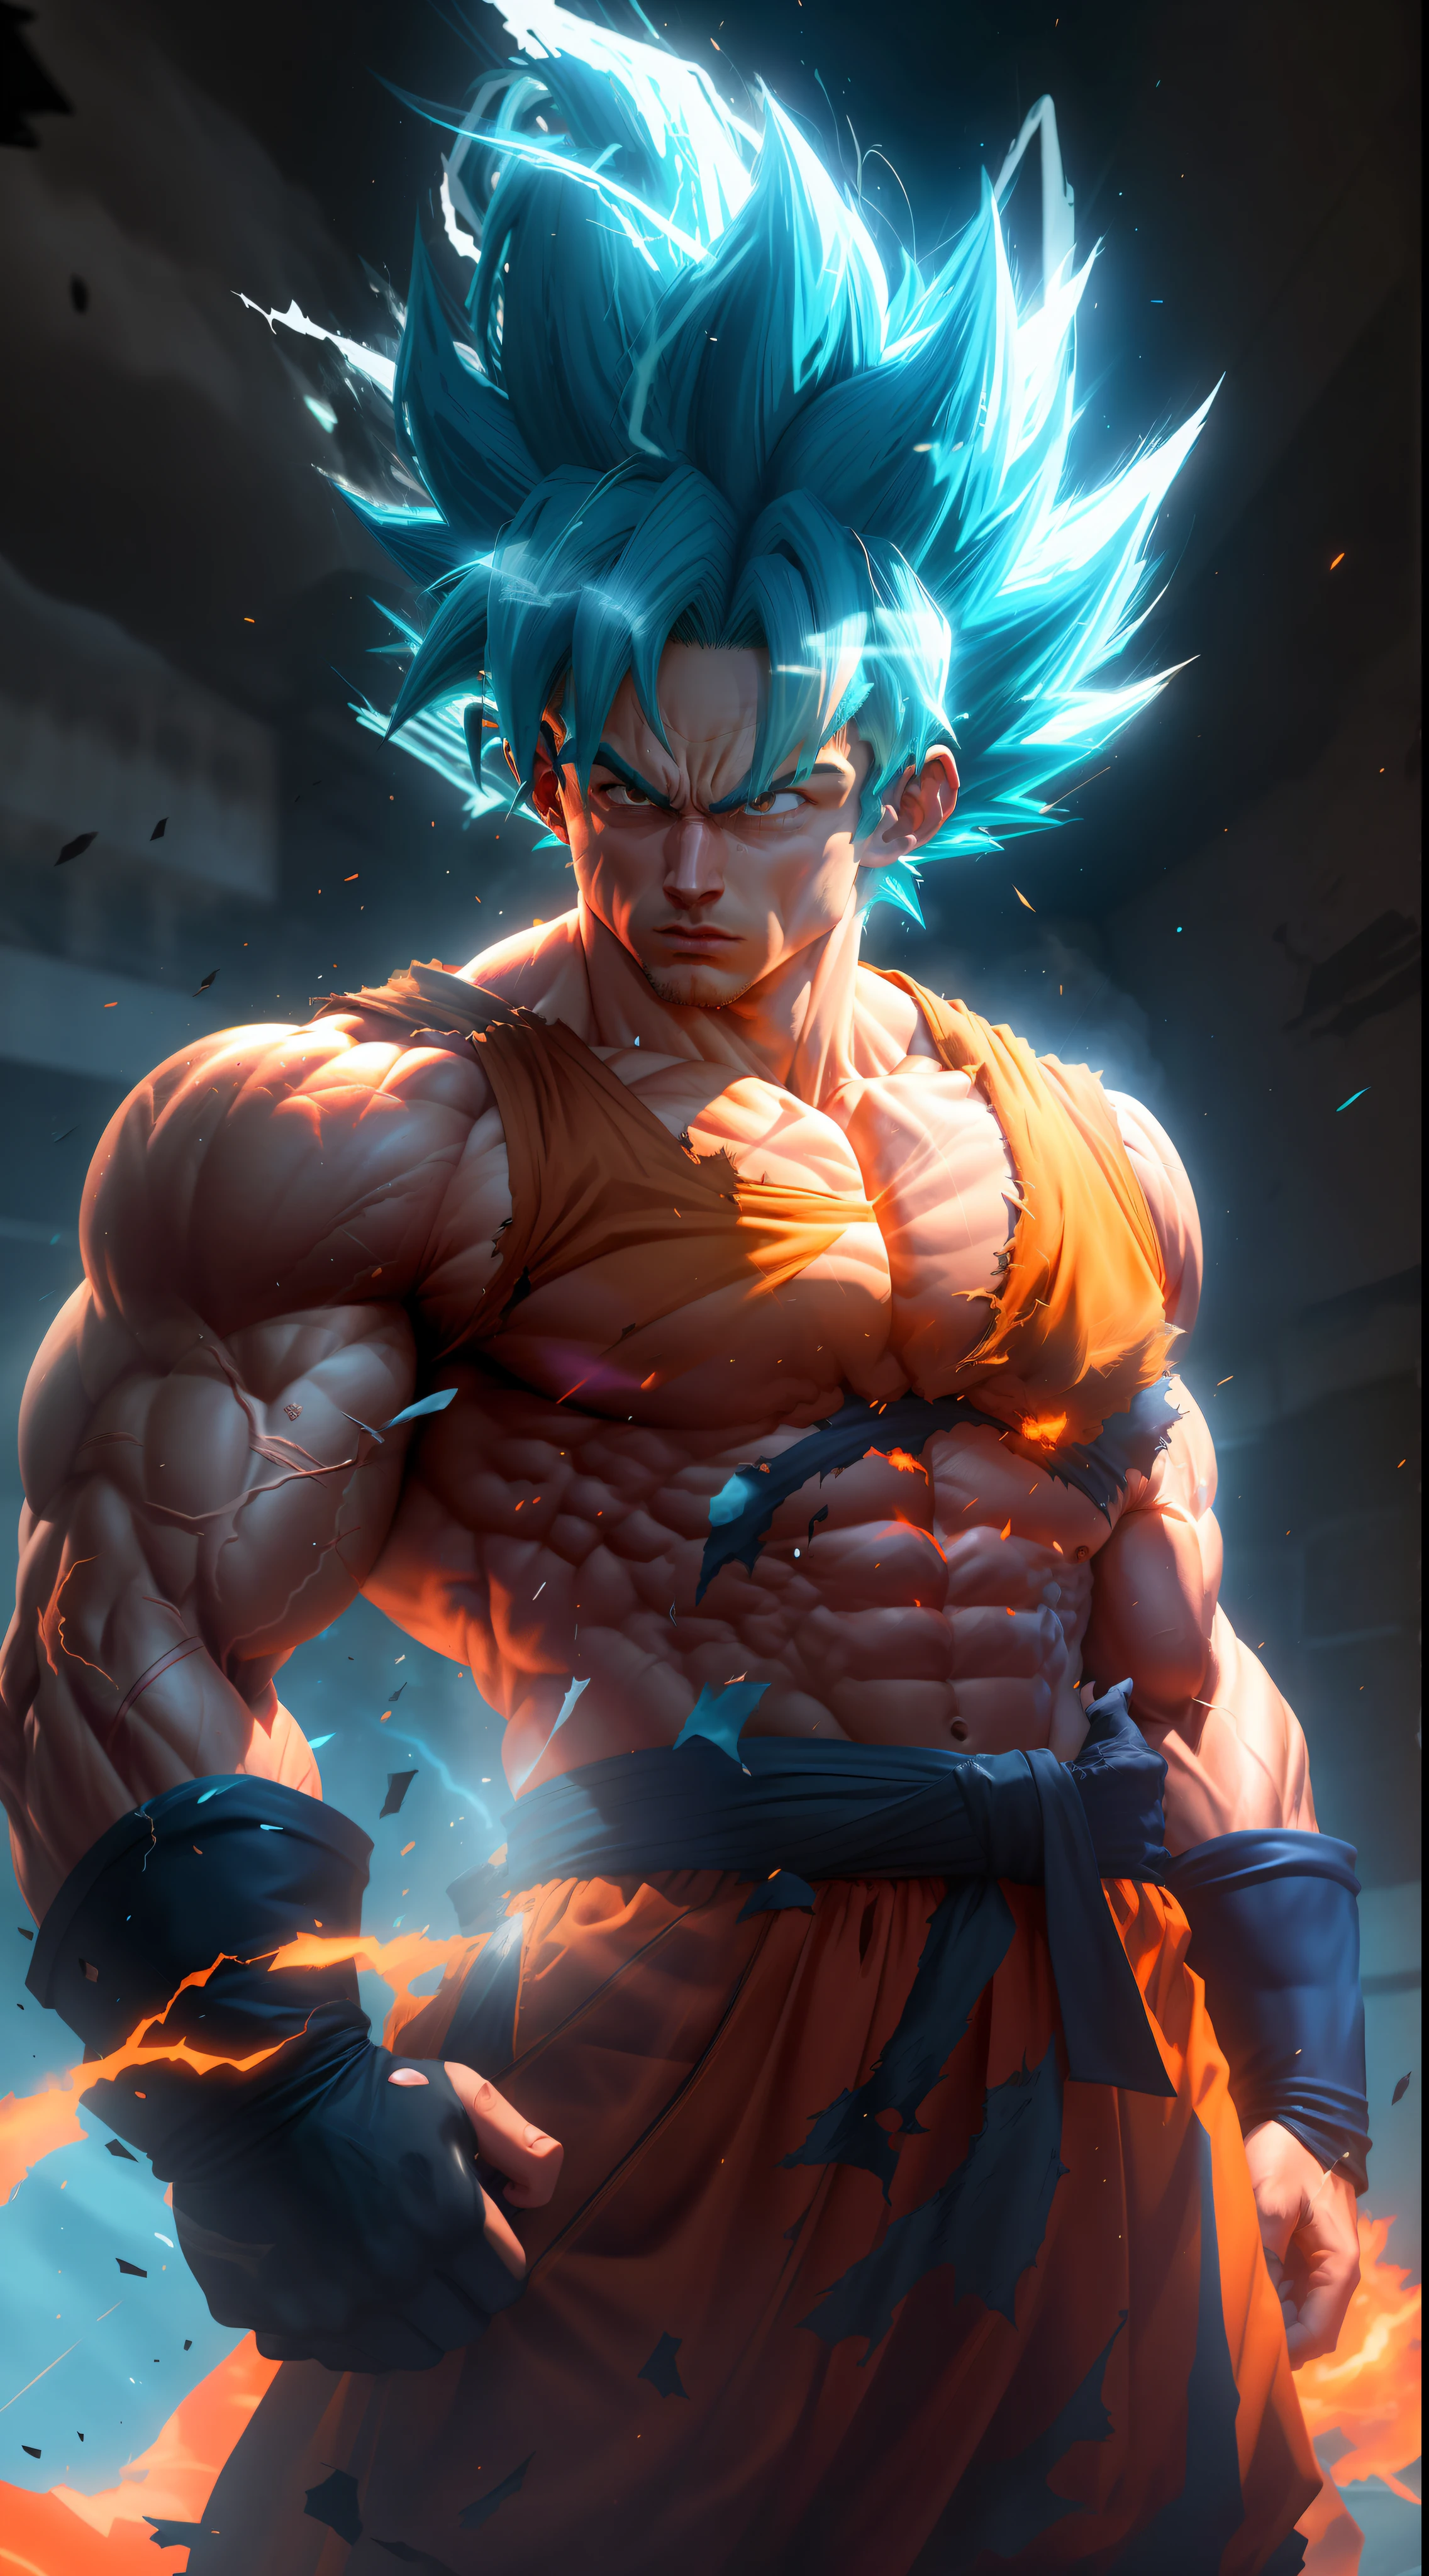 悟空超級賽亞人, 有著極度肌肉發達的霓虹藍頭髮的成年男子, 輪廓分明的肌肉充滿靜脈, 深橙色衣服完全撕裂, 白手套, 嚴肅的臉, 肌肉定義, 大肩膀, 圓形二頭肌, 虚幻引擎 5.8K.